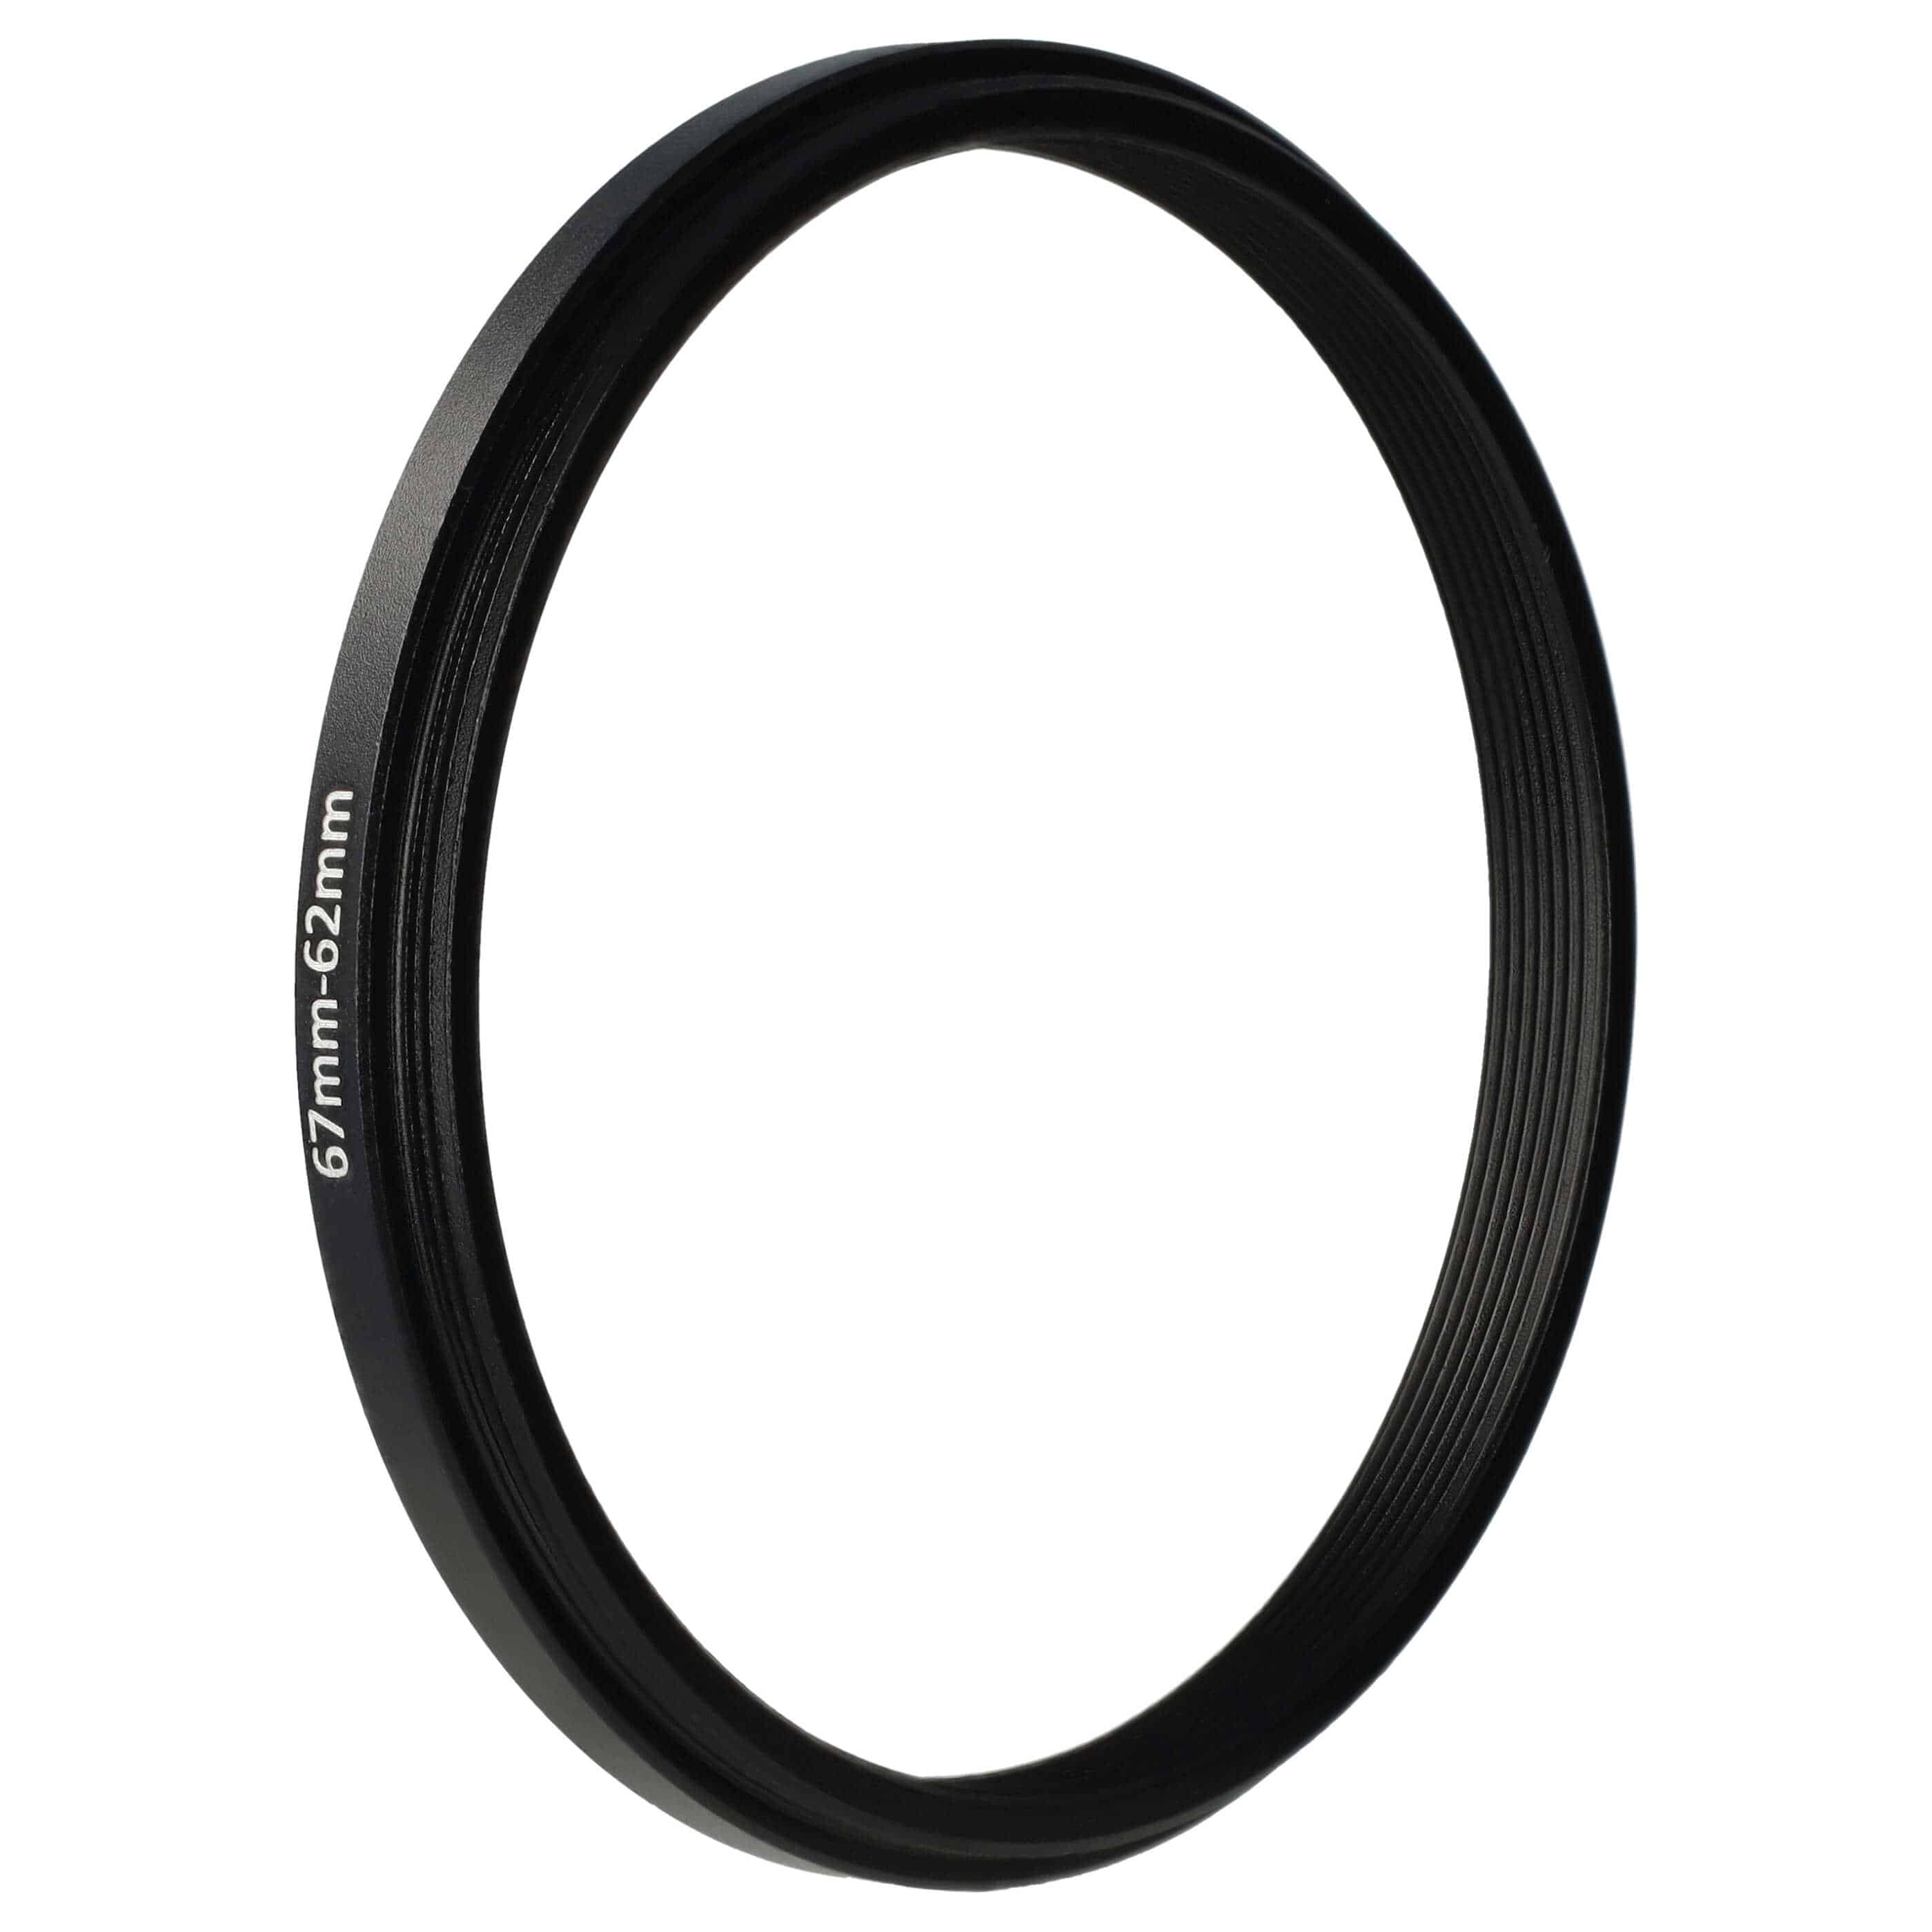 Anello adattatore step-down da 67 mm a 62 mm per obiettivo fotocamera - Adattatore filtro, metallo, nero